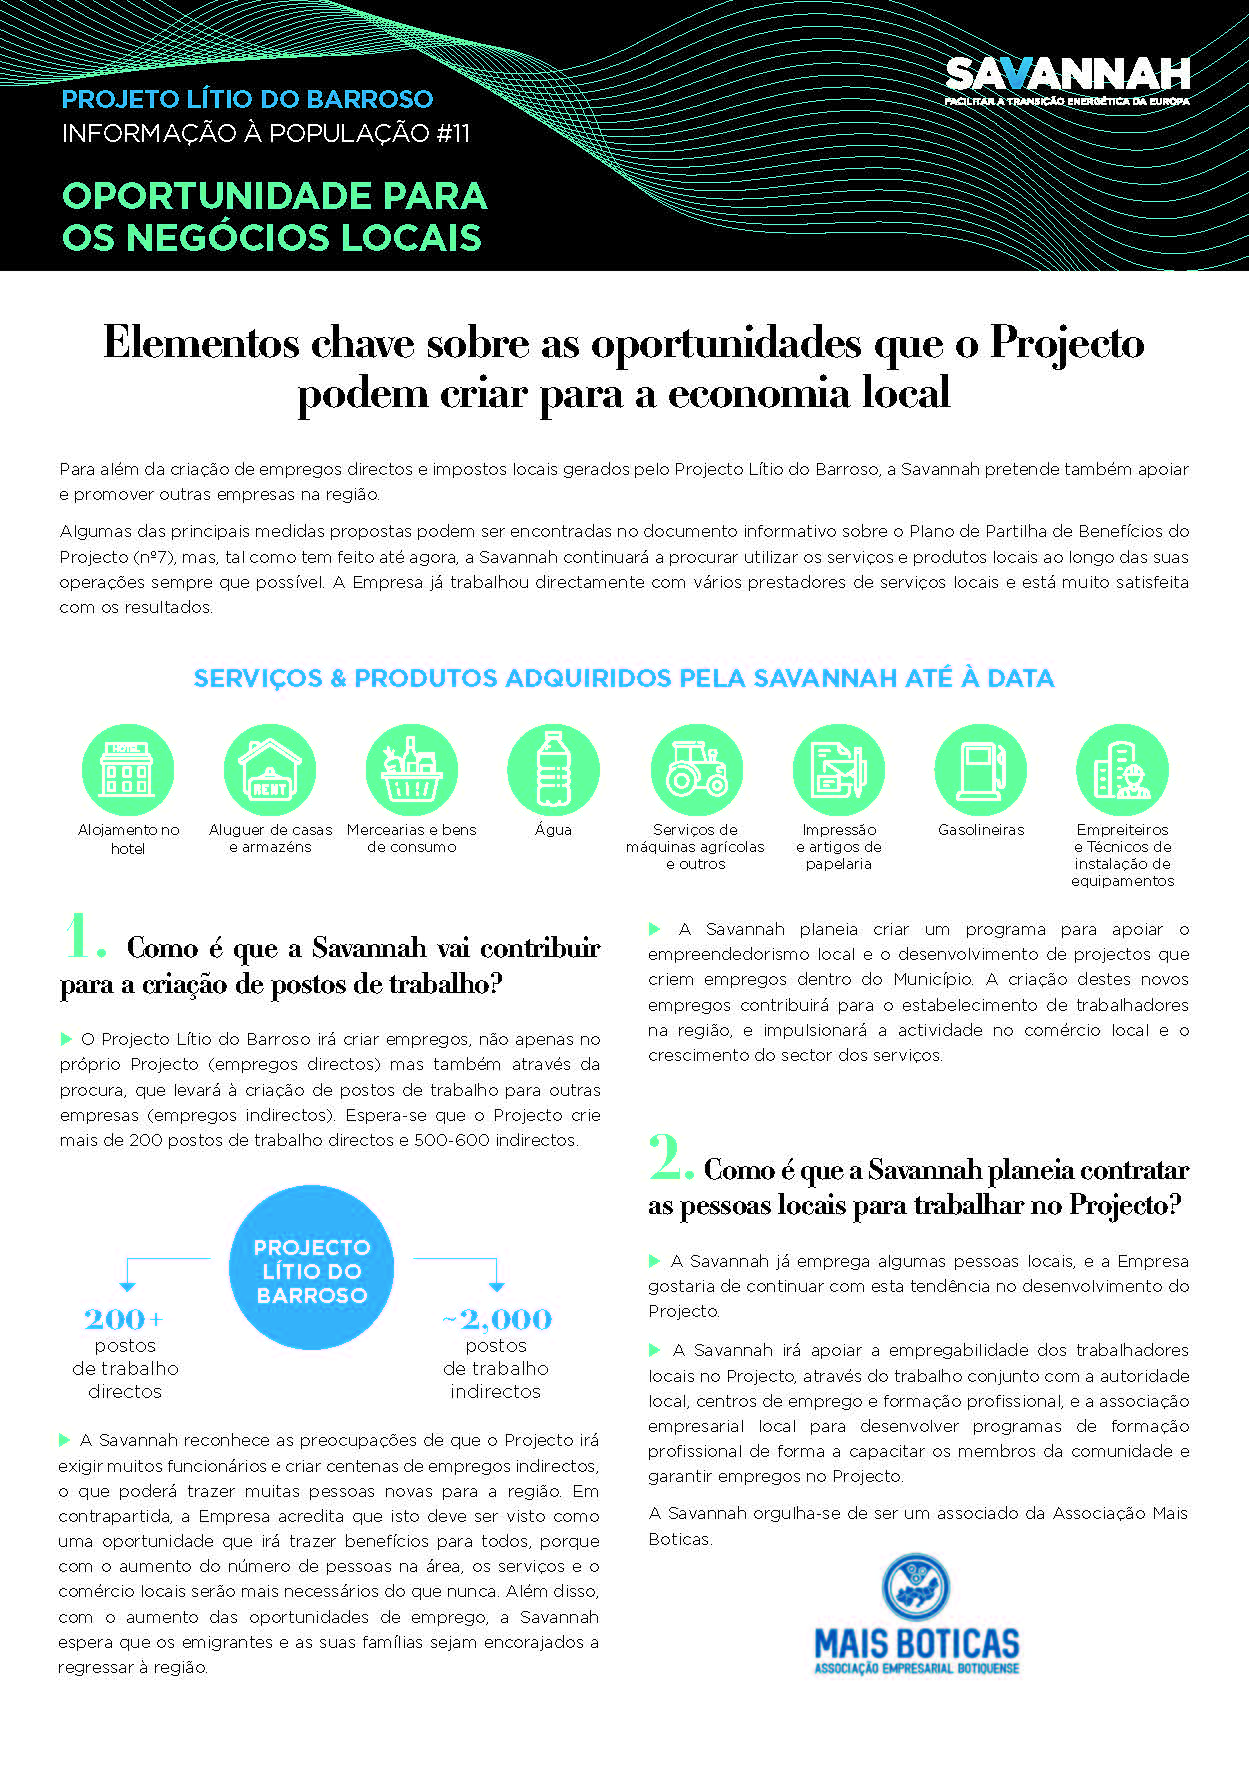 11. Folha Informativa sobre o Projecto Lítio do Barroso - Oportunidade para os negócios locais